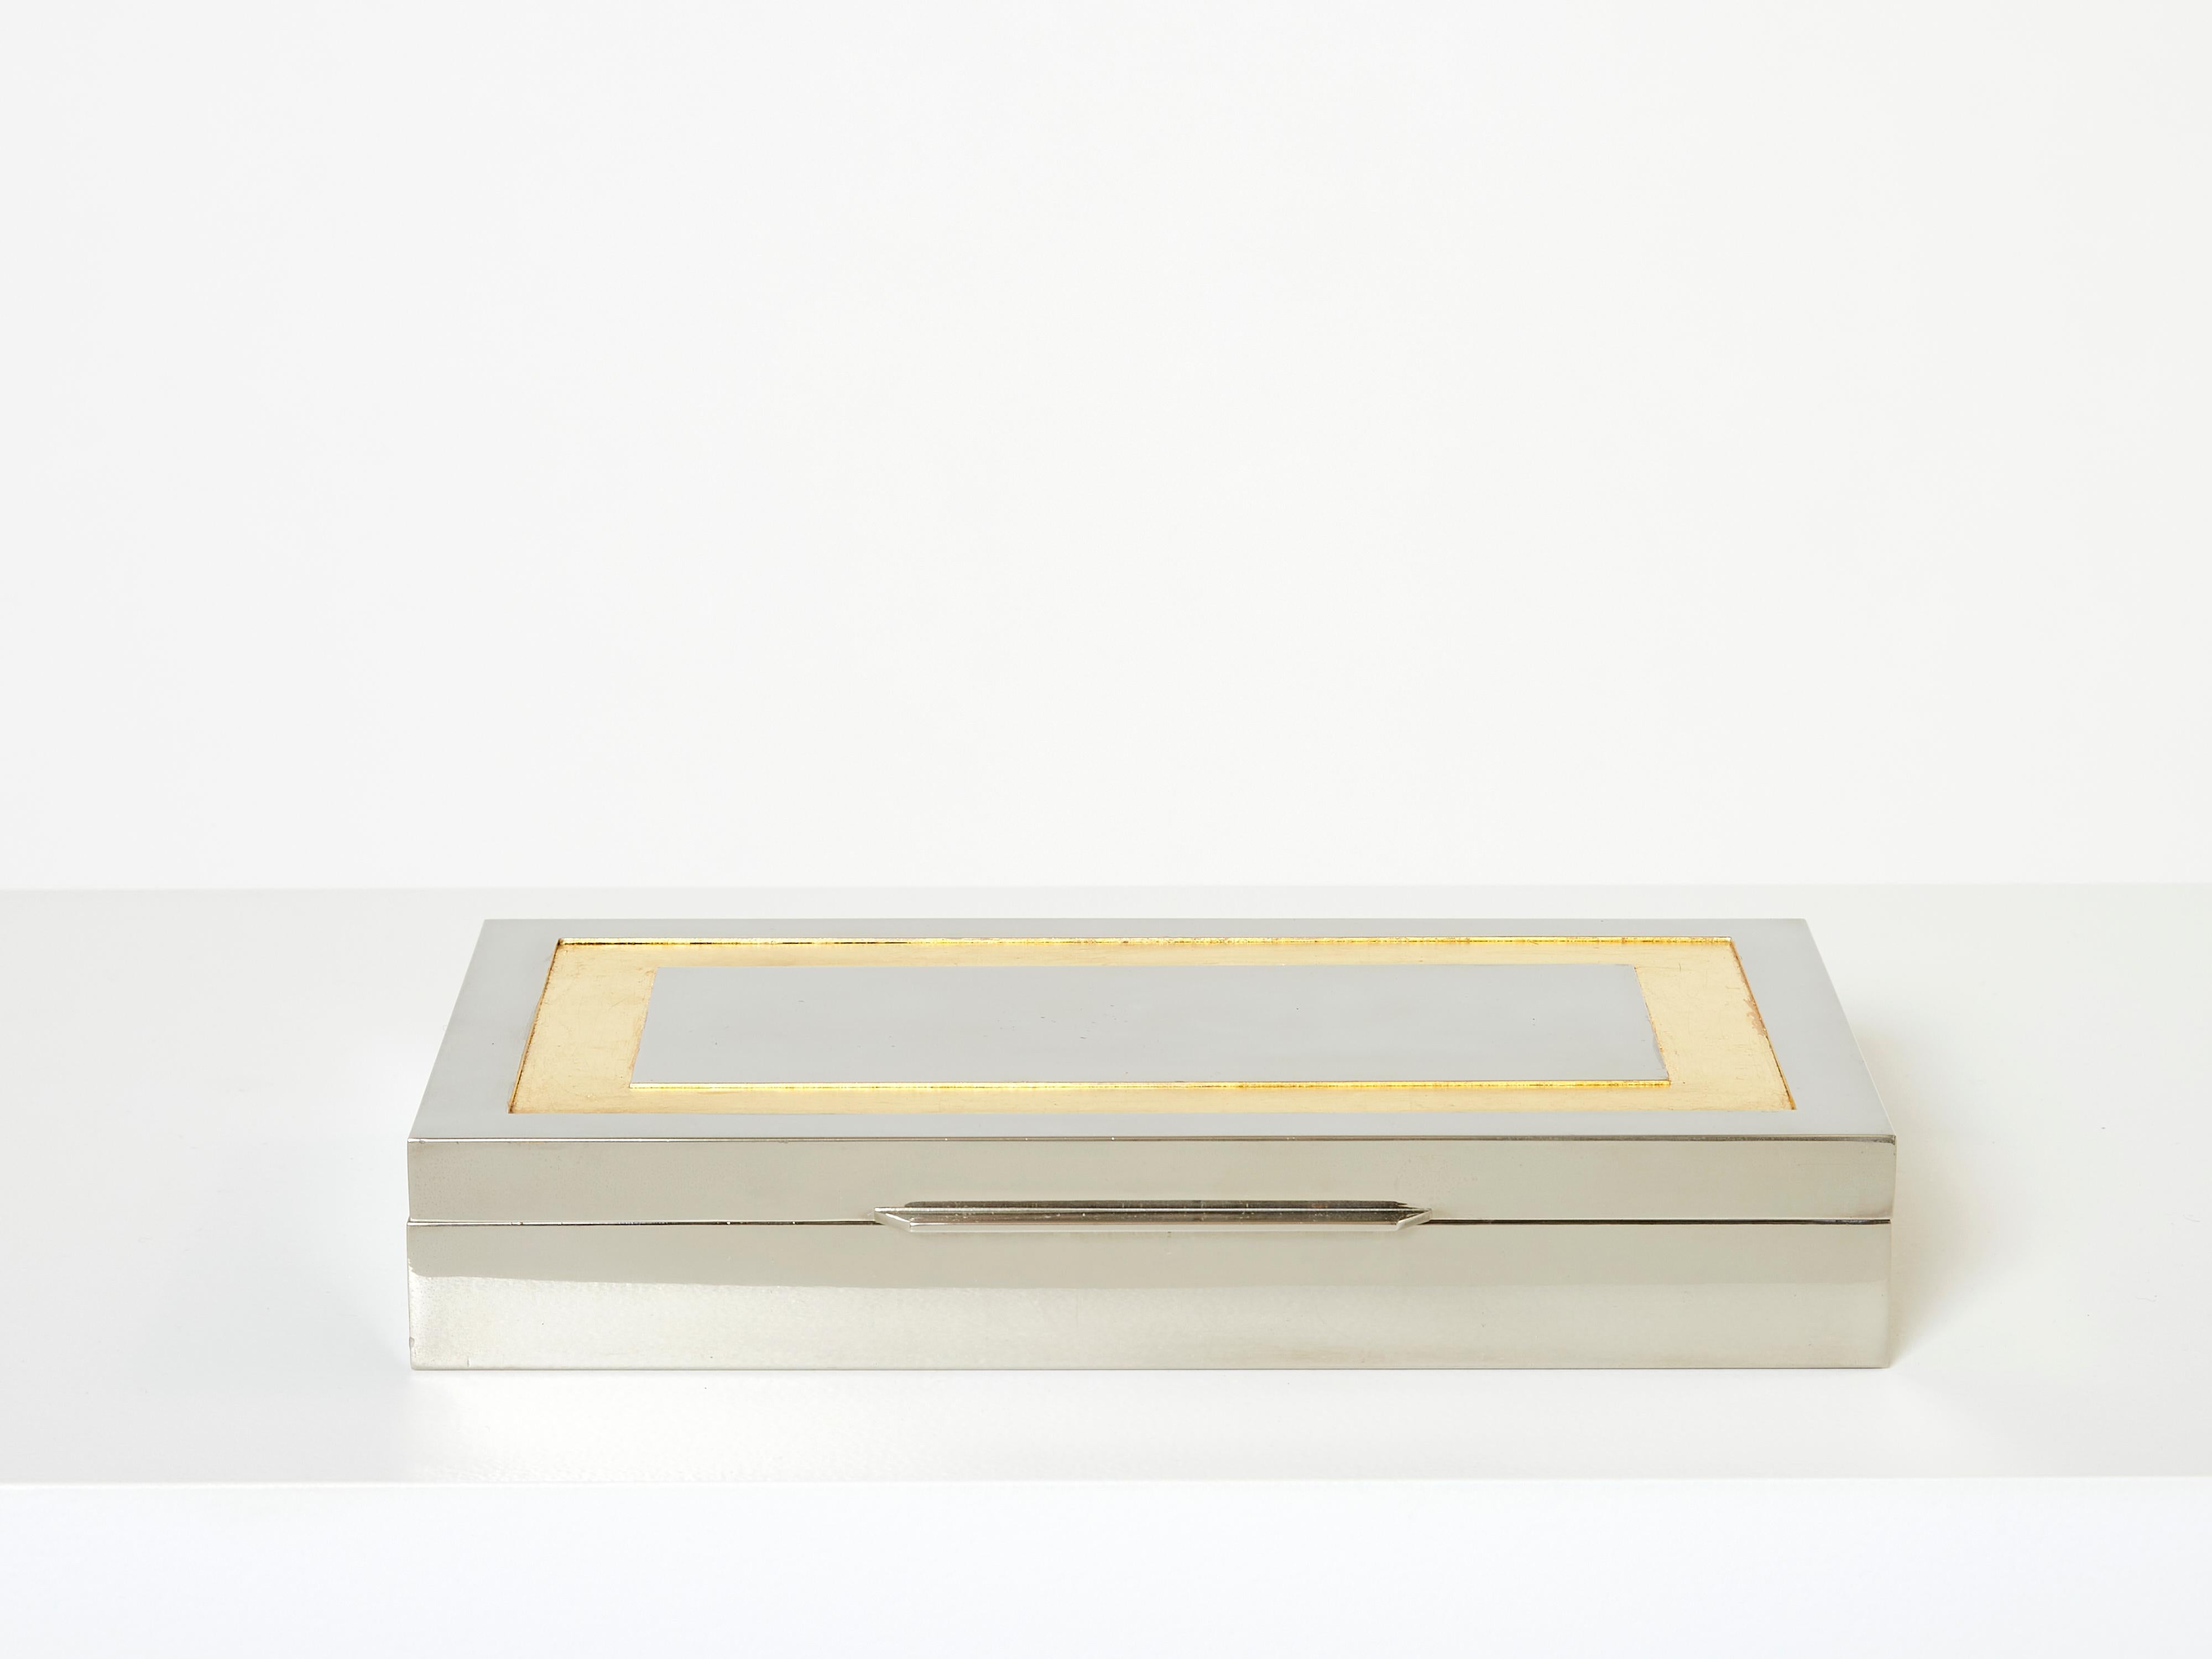 Belle boîte décorative italienne du milieu du siècle conçue par Giacomo Sinopoli et produite par Liwan's Rome à la fin des années 1970. Cette boîte à bijoux chromée présente un magnifique cadre doré à la feuille d'or sur le dessus, avec un intérieur